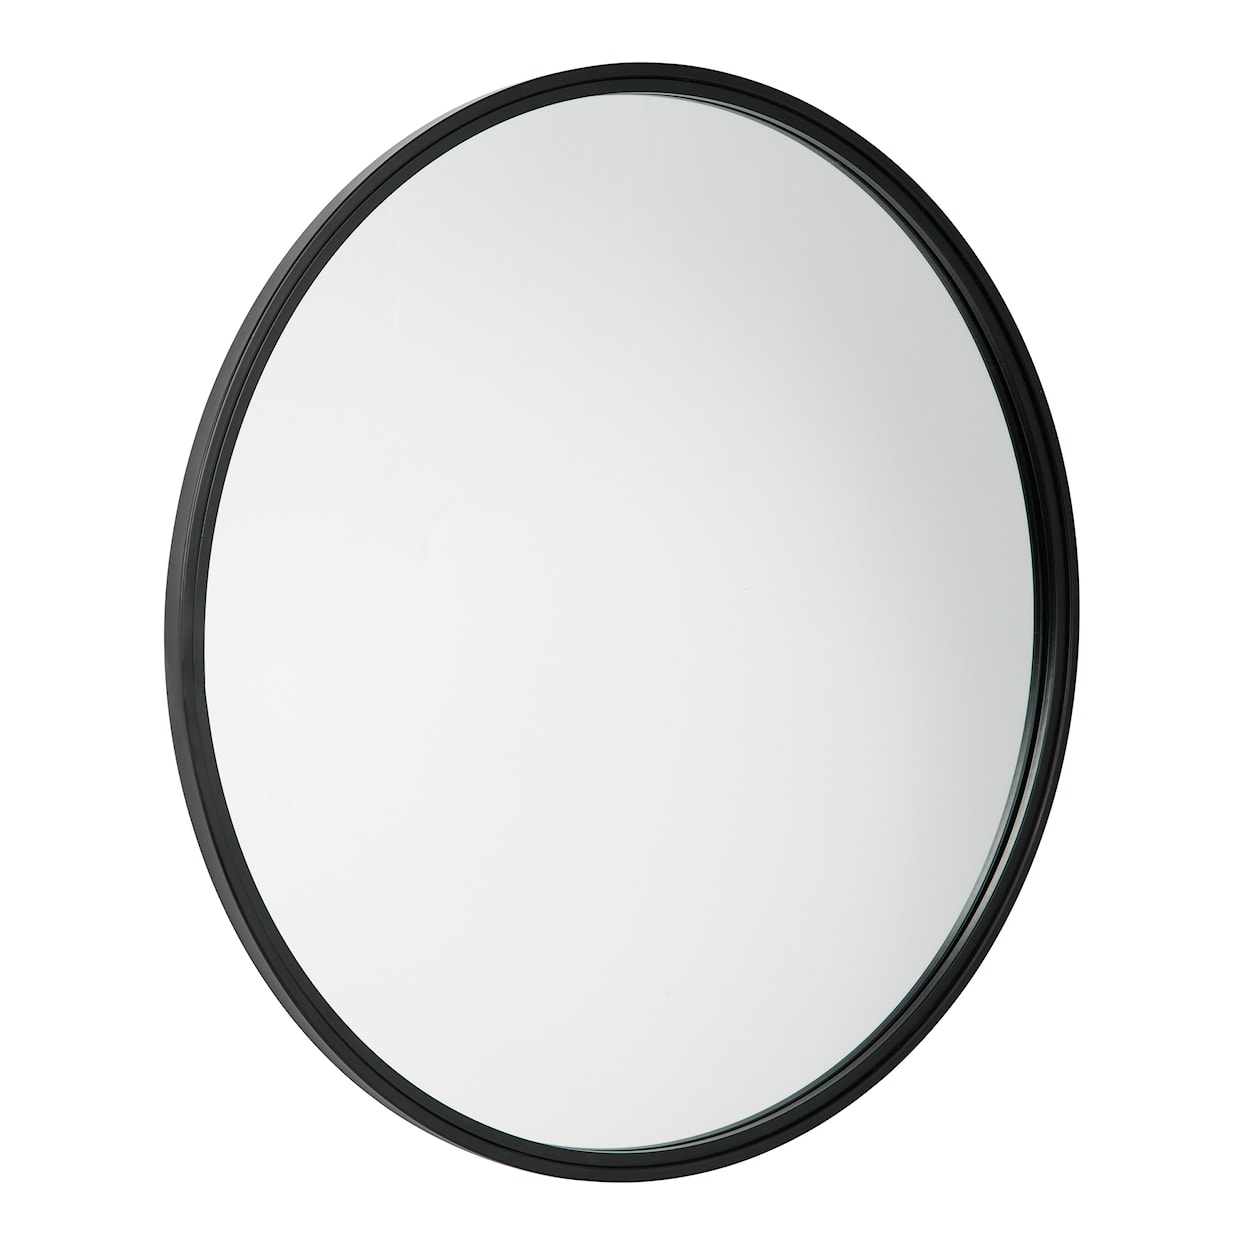 Ashley Signature Design Accent Mirrors Brocky Accent Mirror